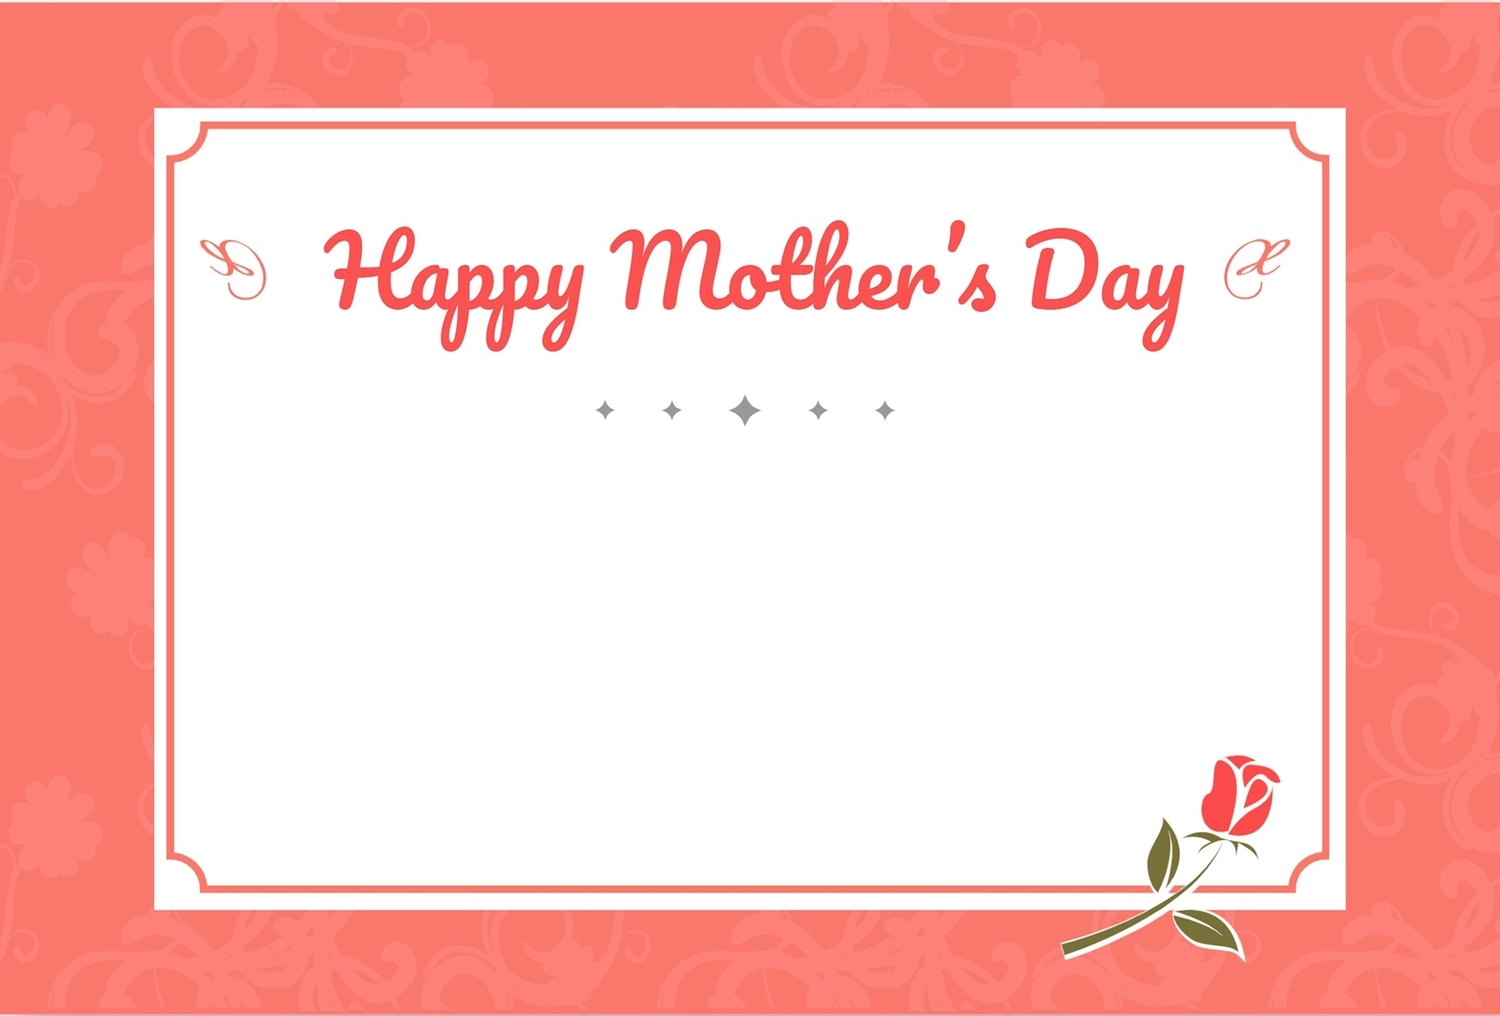 バラ一輪イラストの母の日カード, 5月, 作成, デザイン, メッセージカードテンプレート